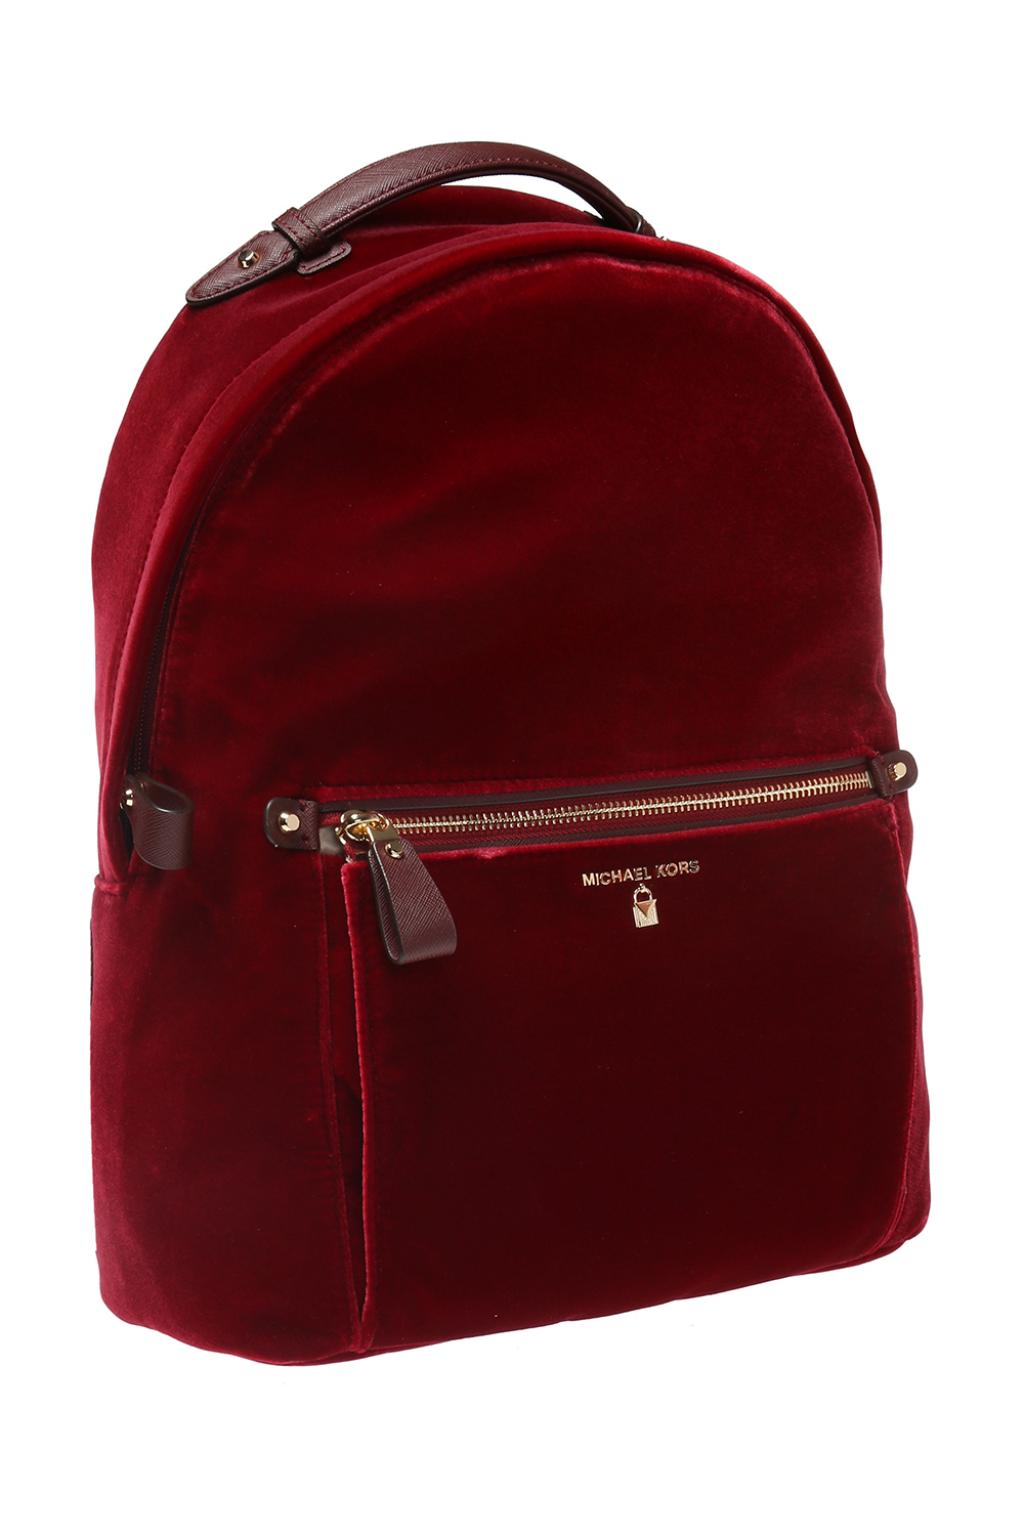 michael kors velvet backpack